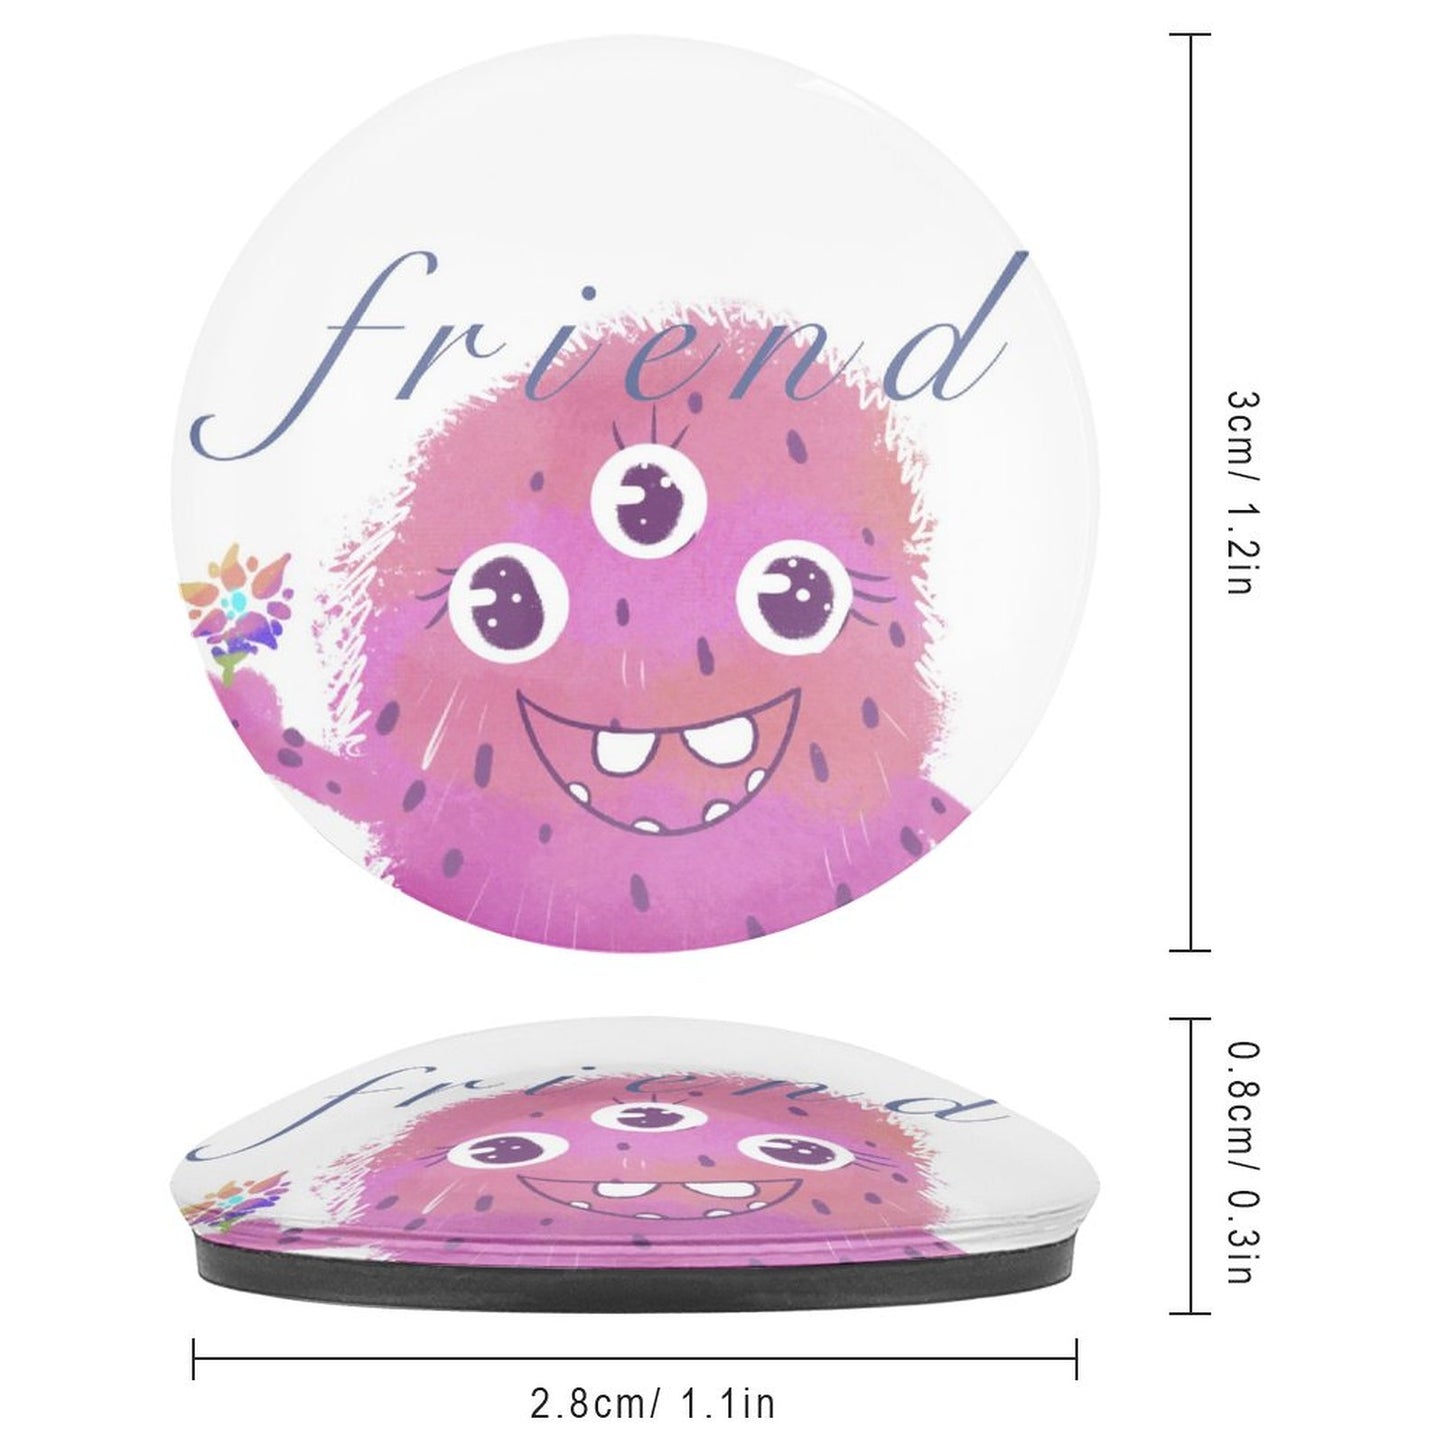 Online DIY Refrigerator Glass Sticker Pink Little Monster Cartoon Fridge Magnet 3cm